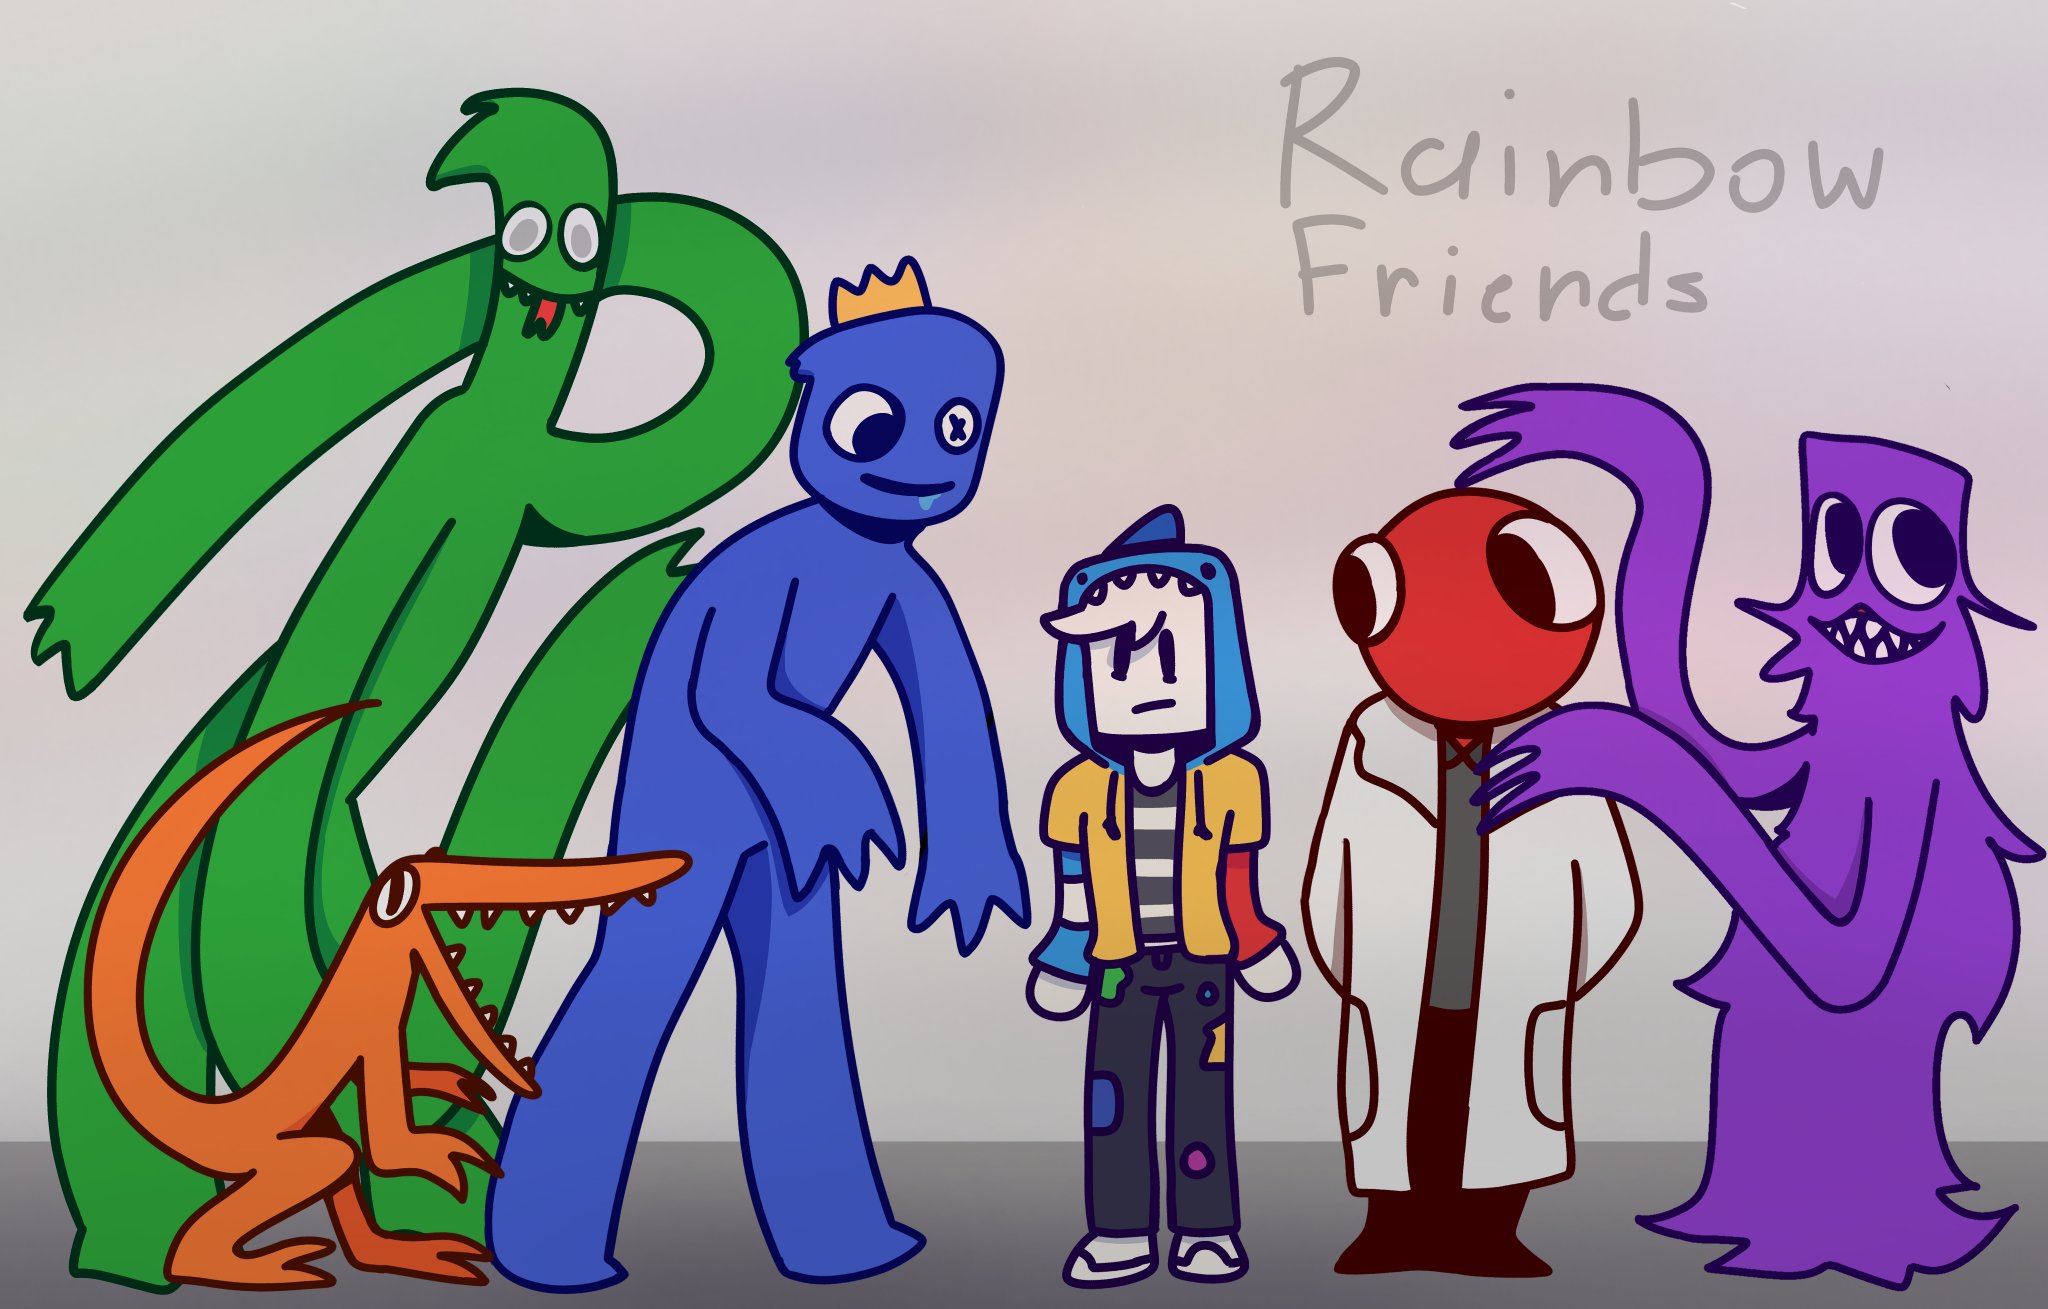 Yono_Tine on X: Desenhei um jogo do roblox, Rainbow Friends, Basicamente  uma fanart do jogo, Espero que gostem @FragmentGames_ #fanart  #RainbowFriends  / X